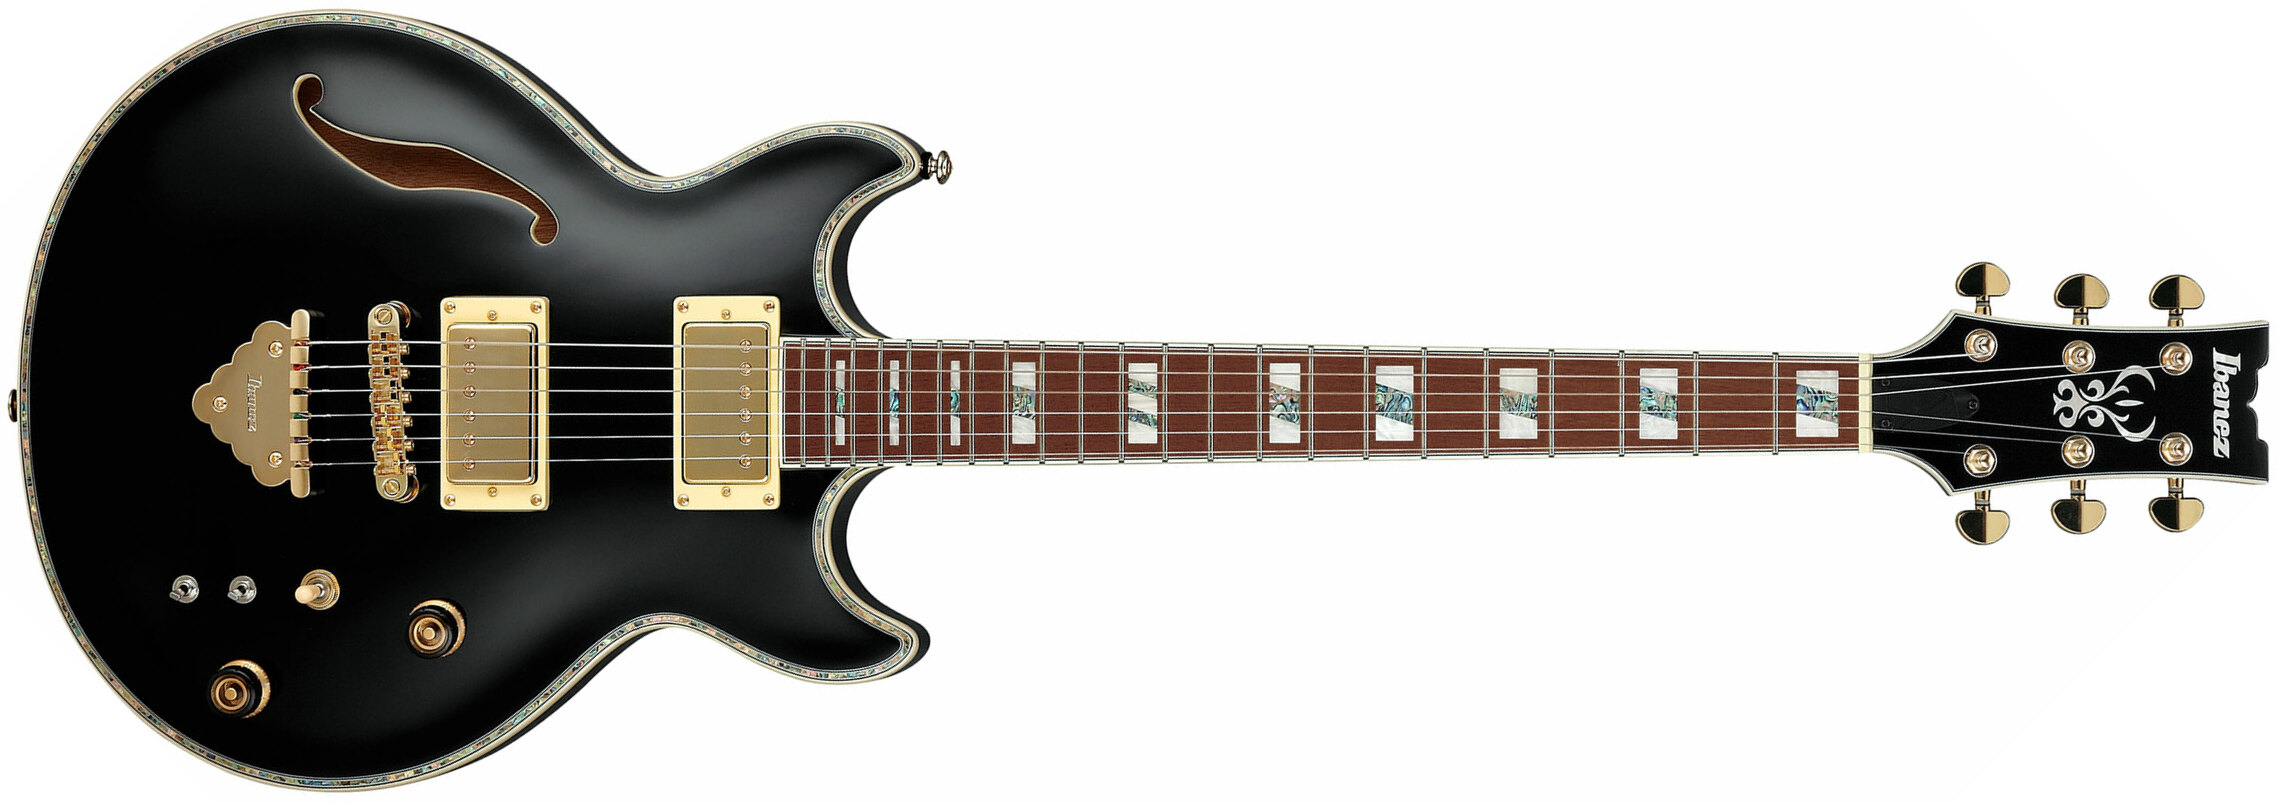 Ibanez Ar520h Bk Standard Hh Ht Jat - Black - Guitare Électrique 3/4 Caisse & Jazz - Main picture